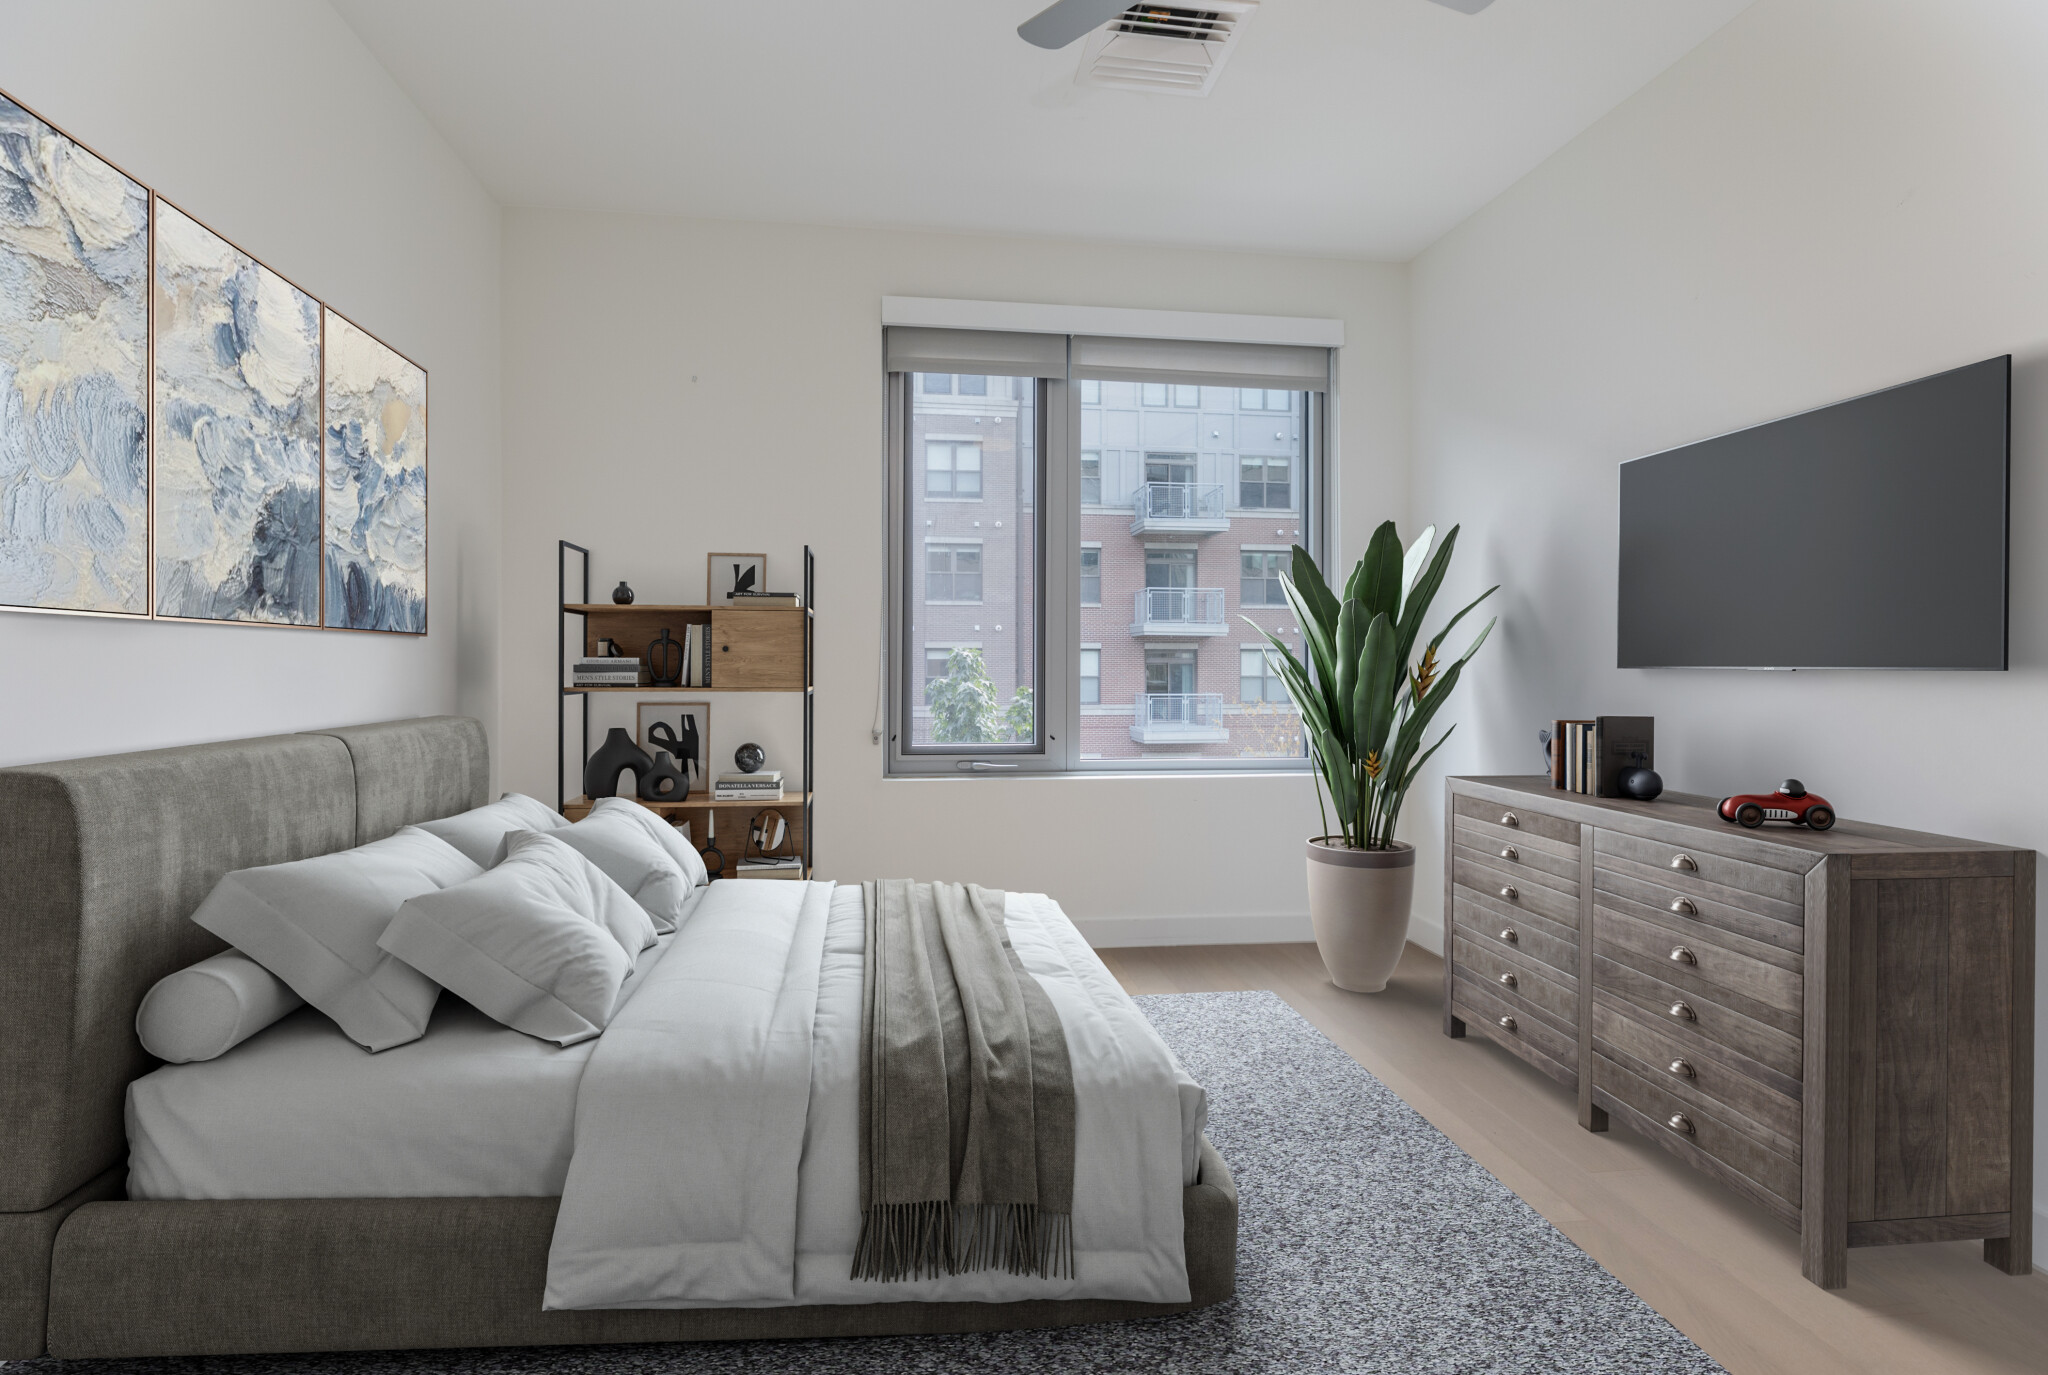 Photos of apartment on Lewis St.,Boston MA 02128